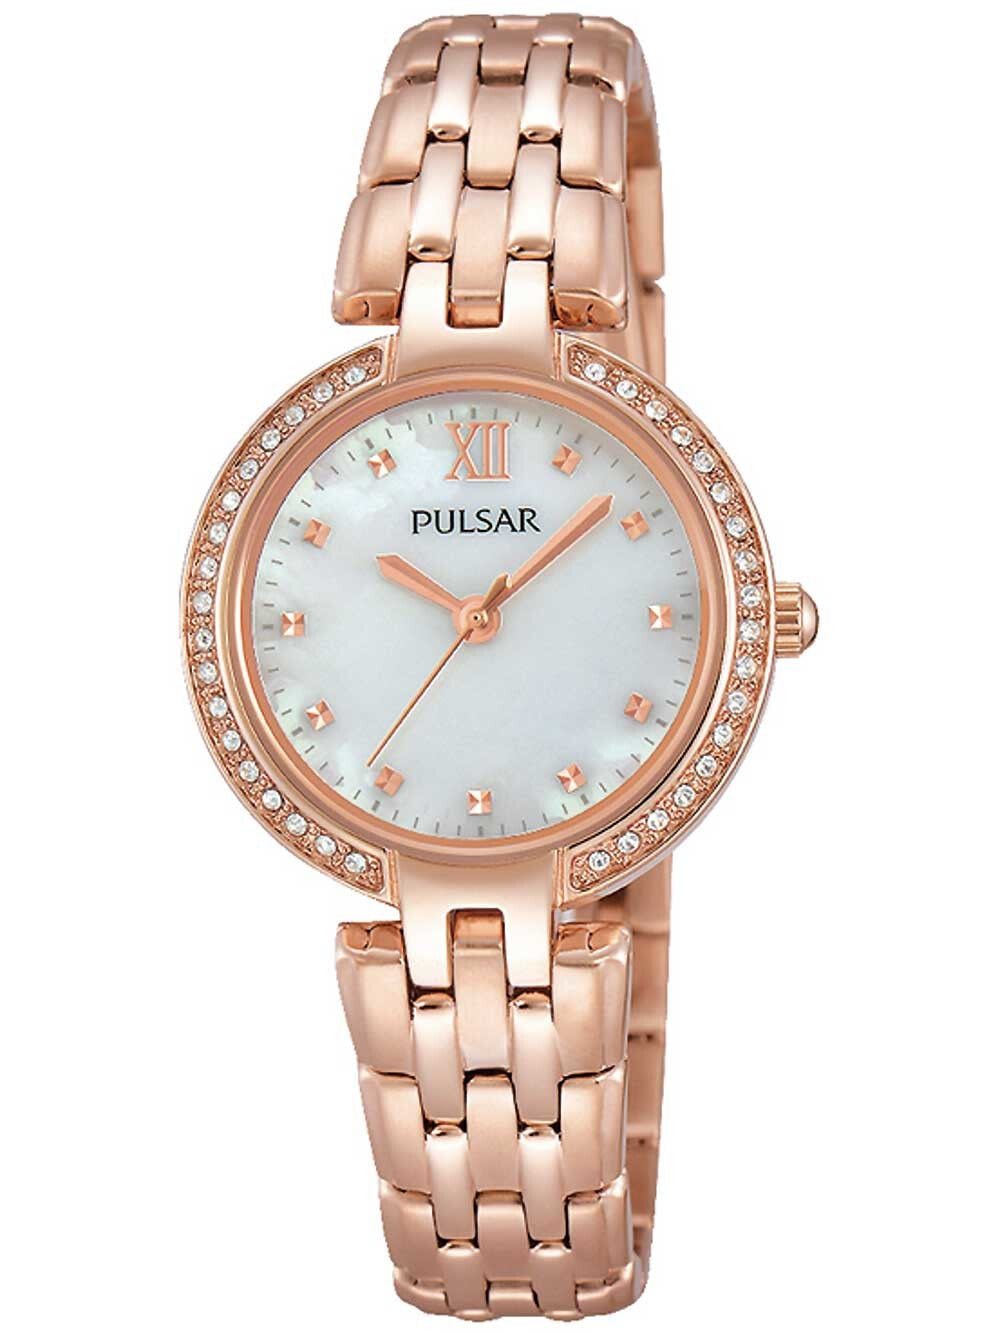 Женские наручные кварцевые часы Pulsar ремешок из нержавеющей стали. Водонепроницаемость-3 АТМ. Закаленное минеральное стекло.